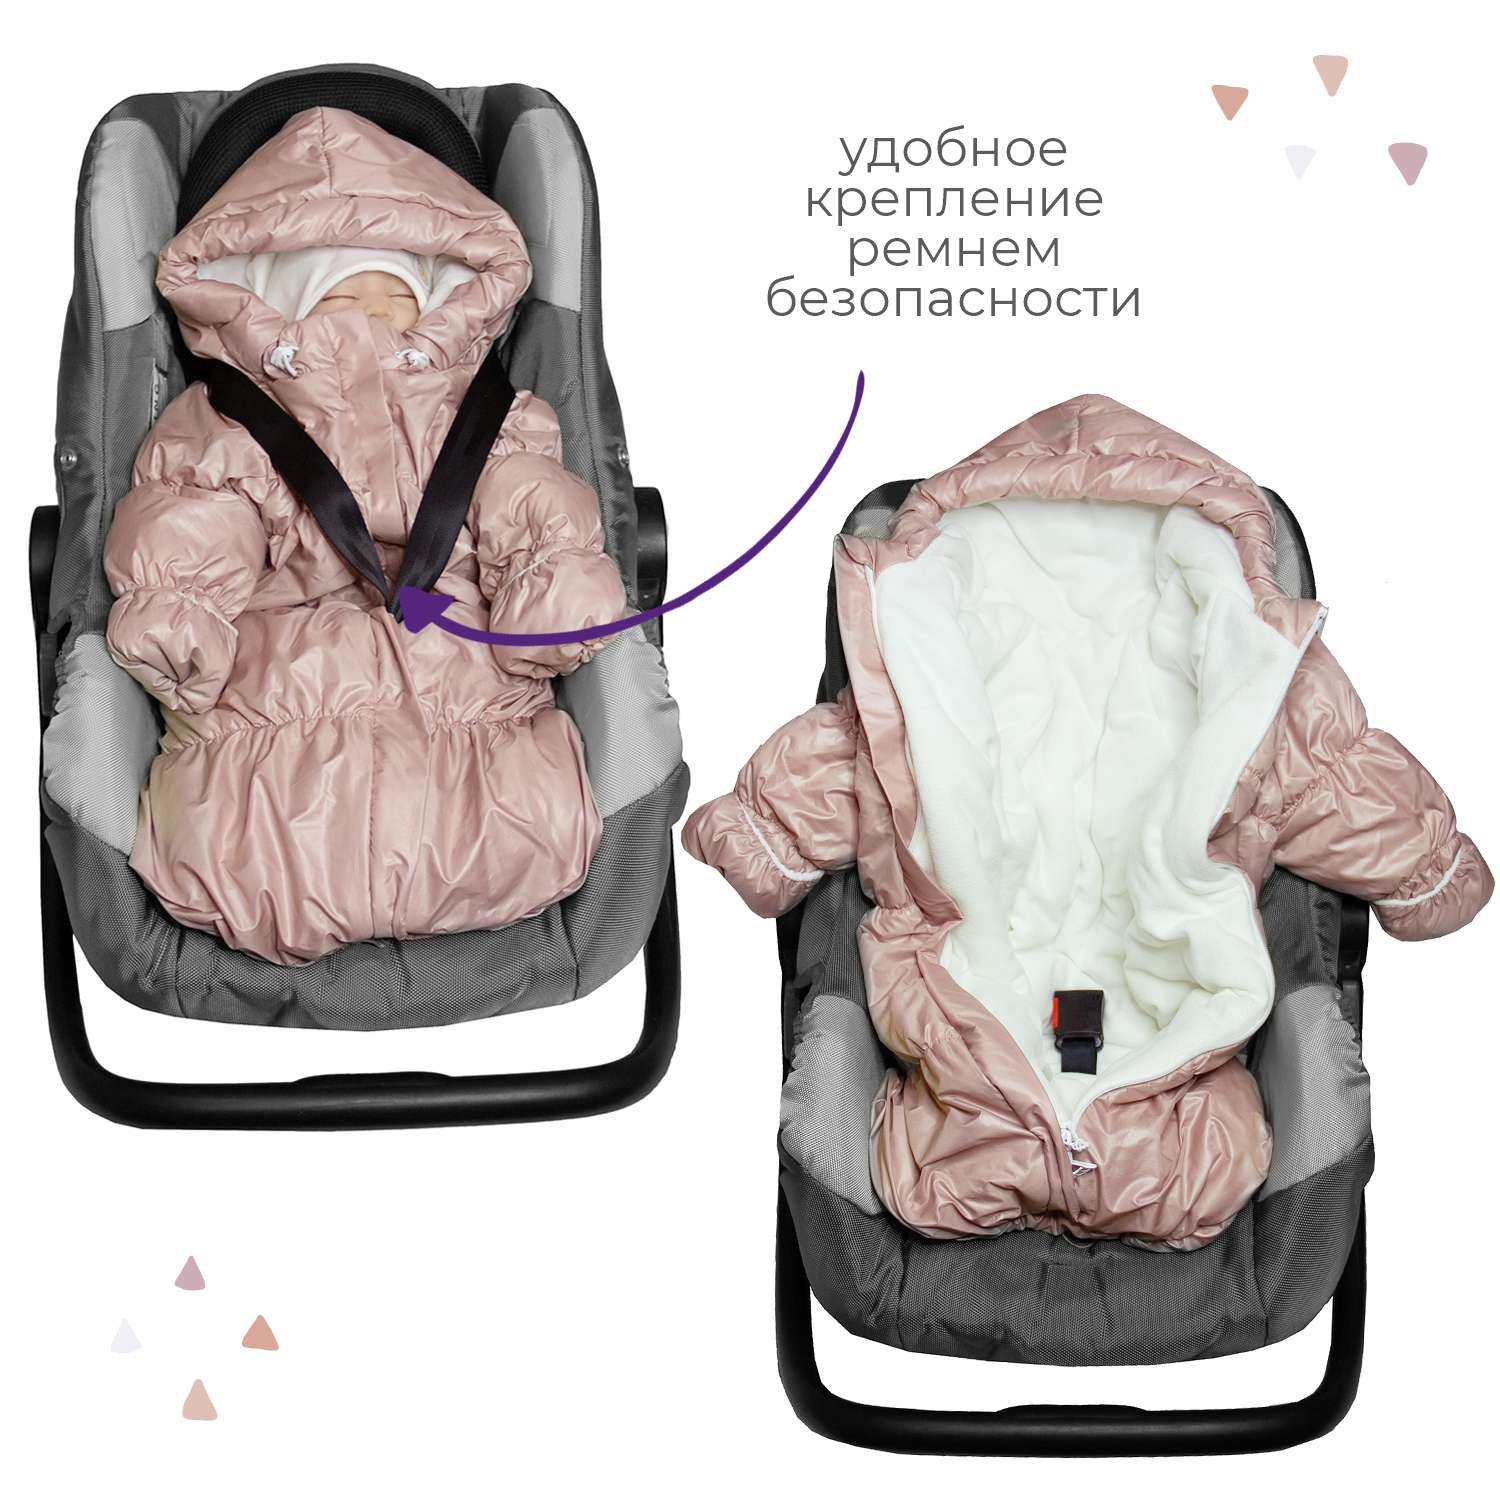 Конверт для новорожденного inlovery на выписку/в коляску «Маршмеллоу» пыльная роза - фото 4